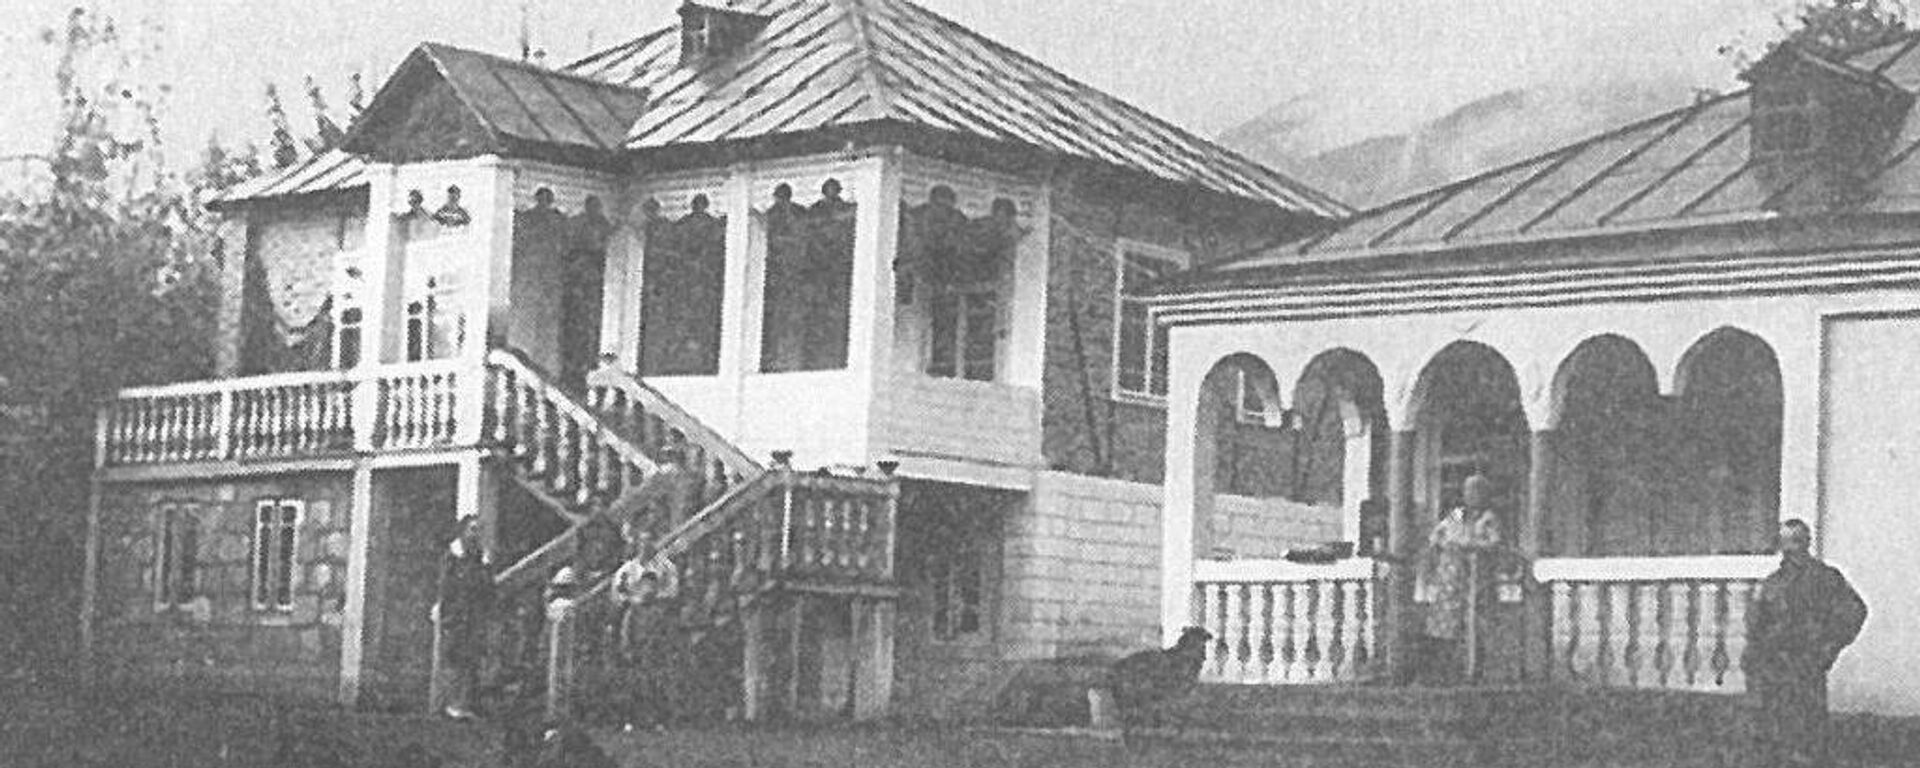 Жилой дом и хозяйственное помещение Амацурта. 1970-е годы - Sputnik Абхазия, 1920, 22.08.2020